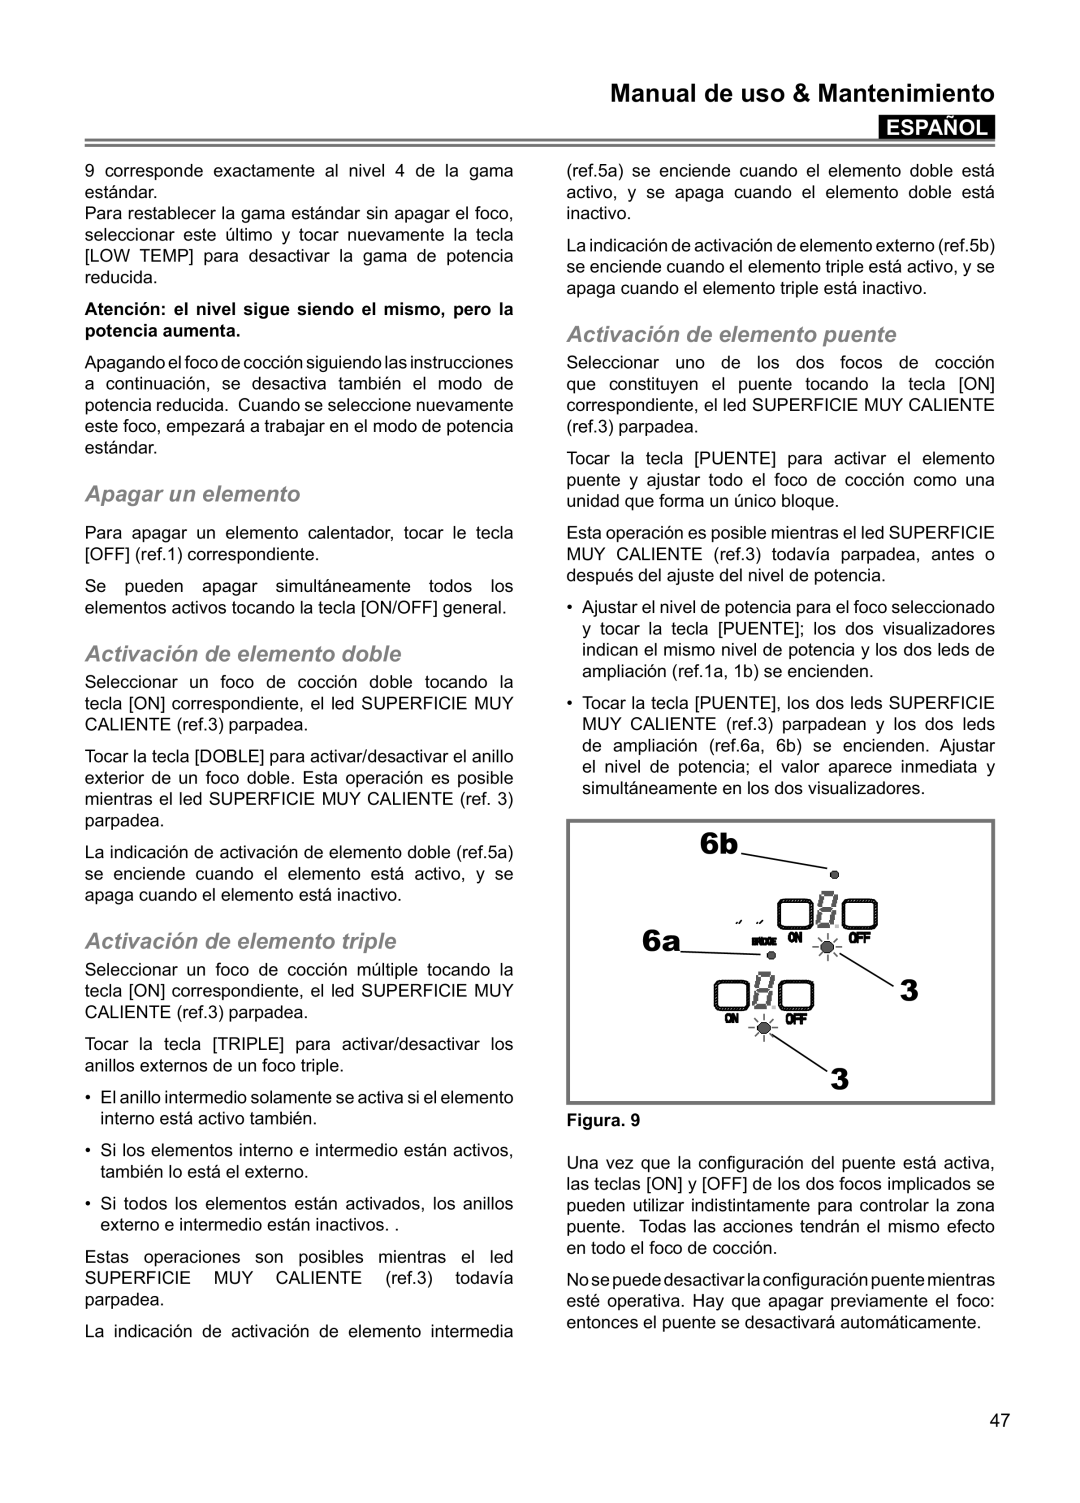 Blomberg CTE 30400, CTE 36500 manuel dutilisation 6b 6a 3 3, Manual de uso & Mantenimiento, Español, Figura 